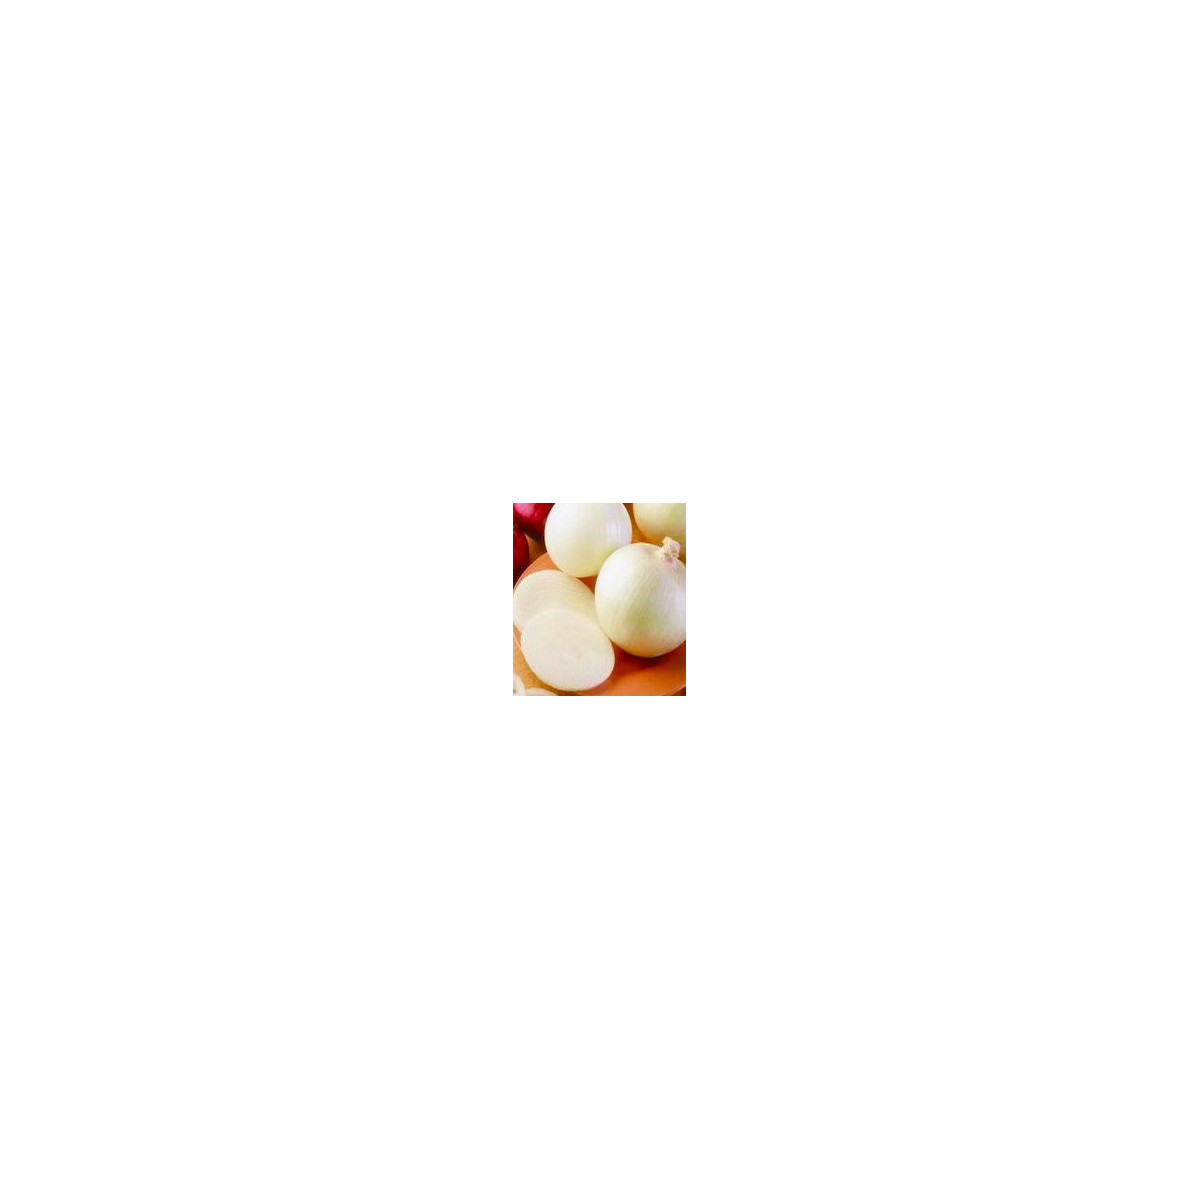 Cibule jarní bílá - lahůdková - semena Cibule - 1 gr